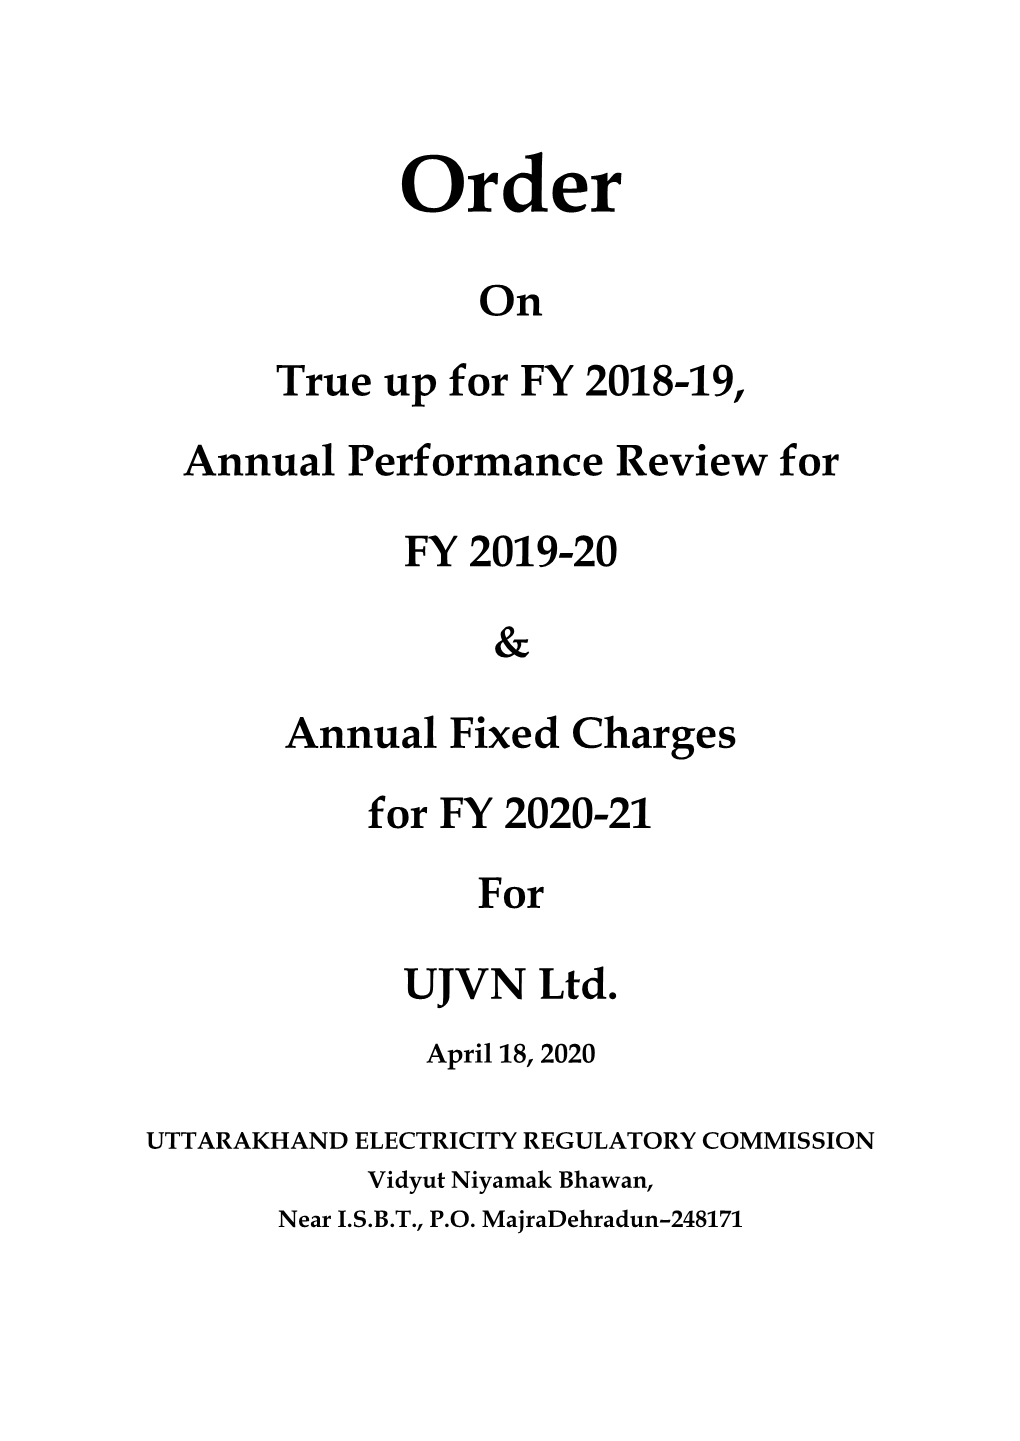 Order on Tariffs for FY 2020-21